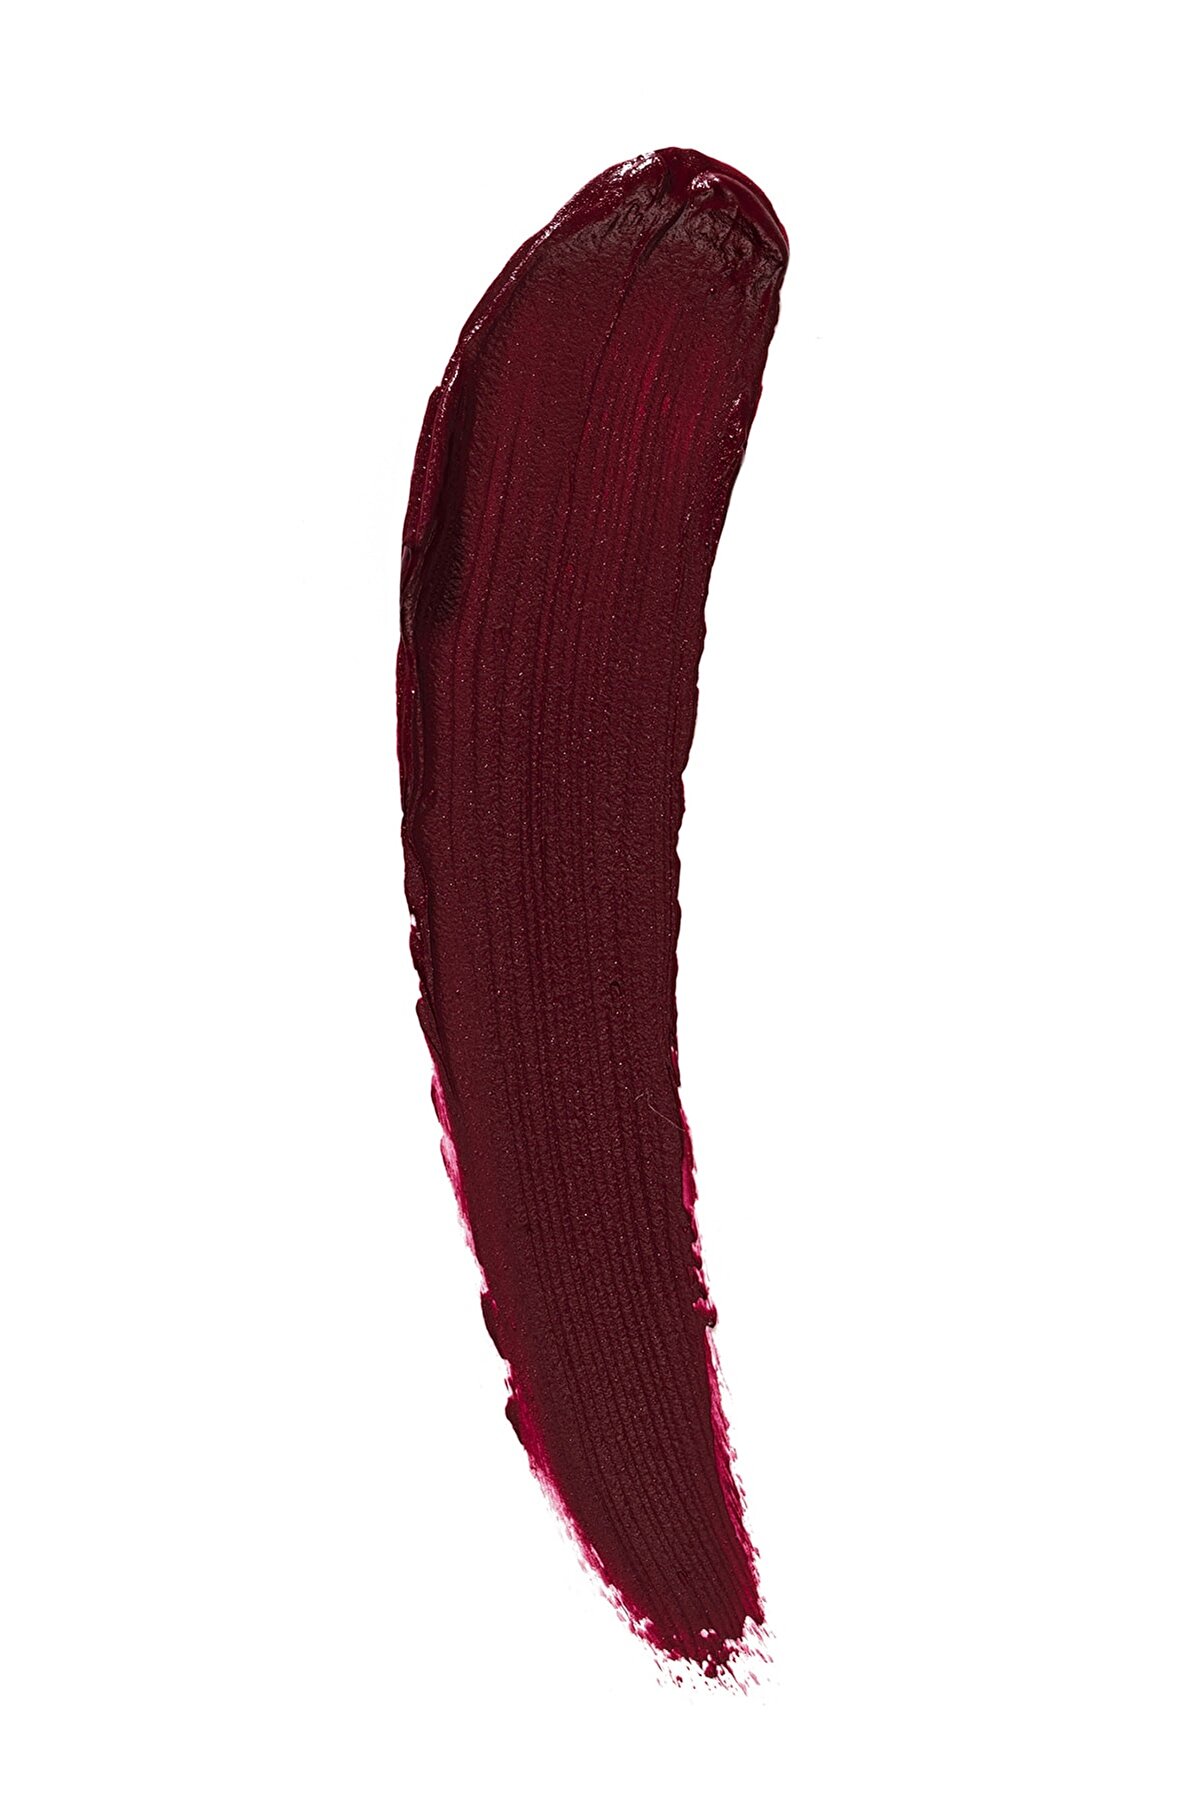 رژ لب مایع مات ابریشمی مدل Silk Matte رنگ بنفش تیره شماره ۰۸ فلورمار Flormar شیکولات